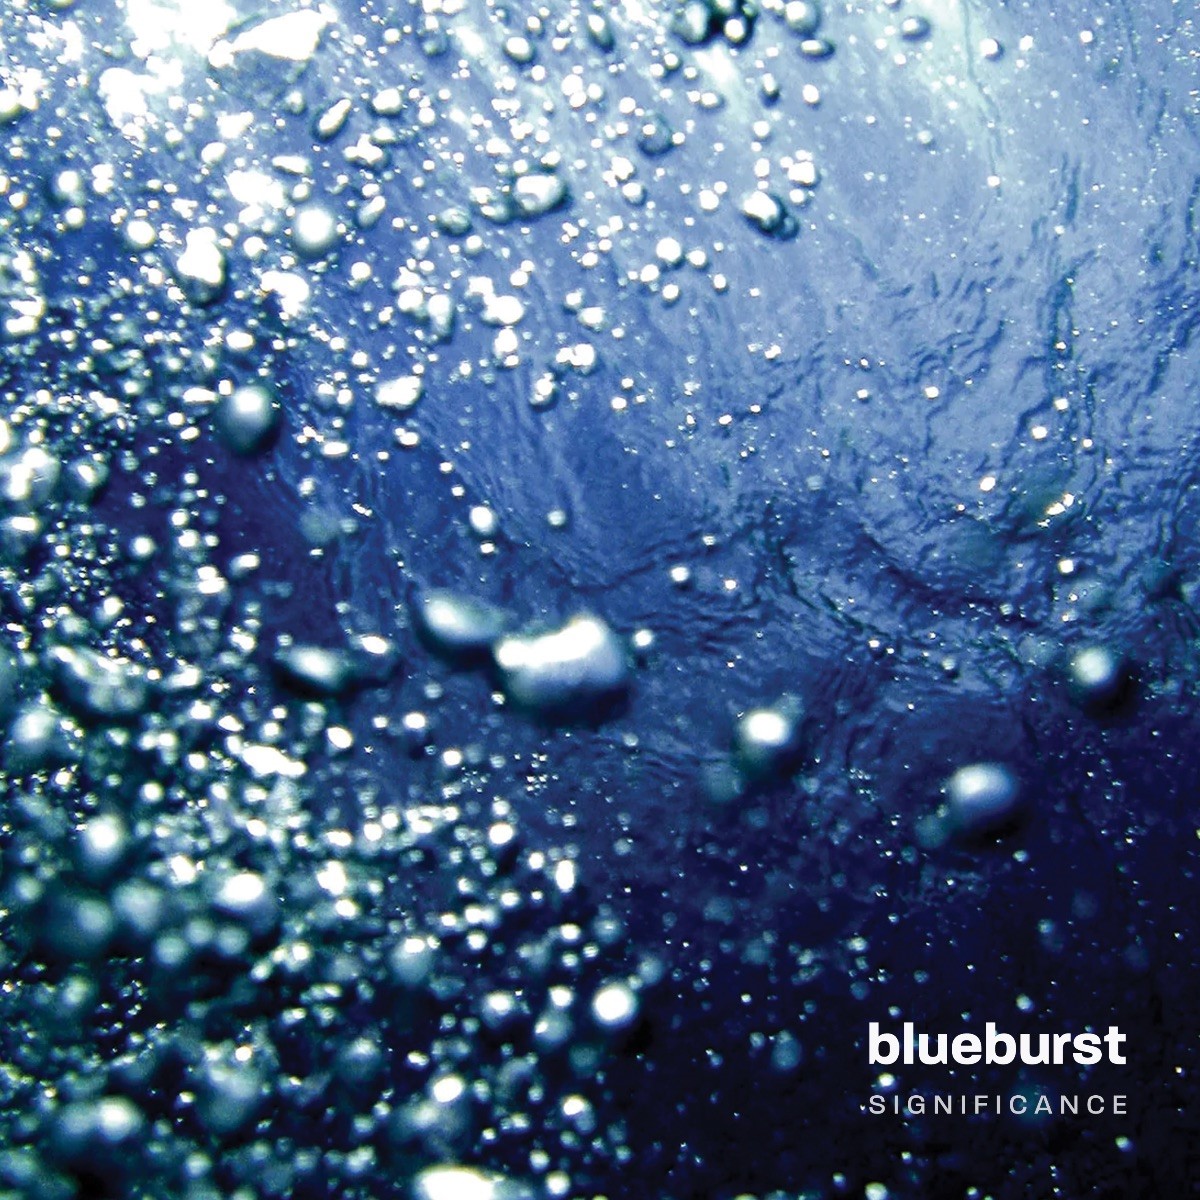 Blueburst ‘Significance’ album artwork